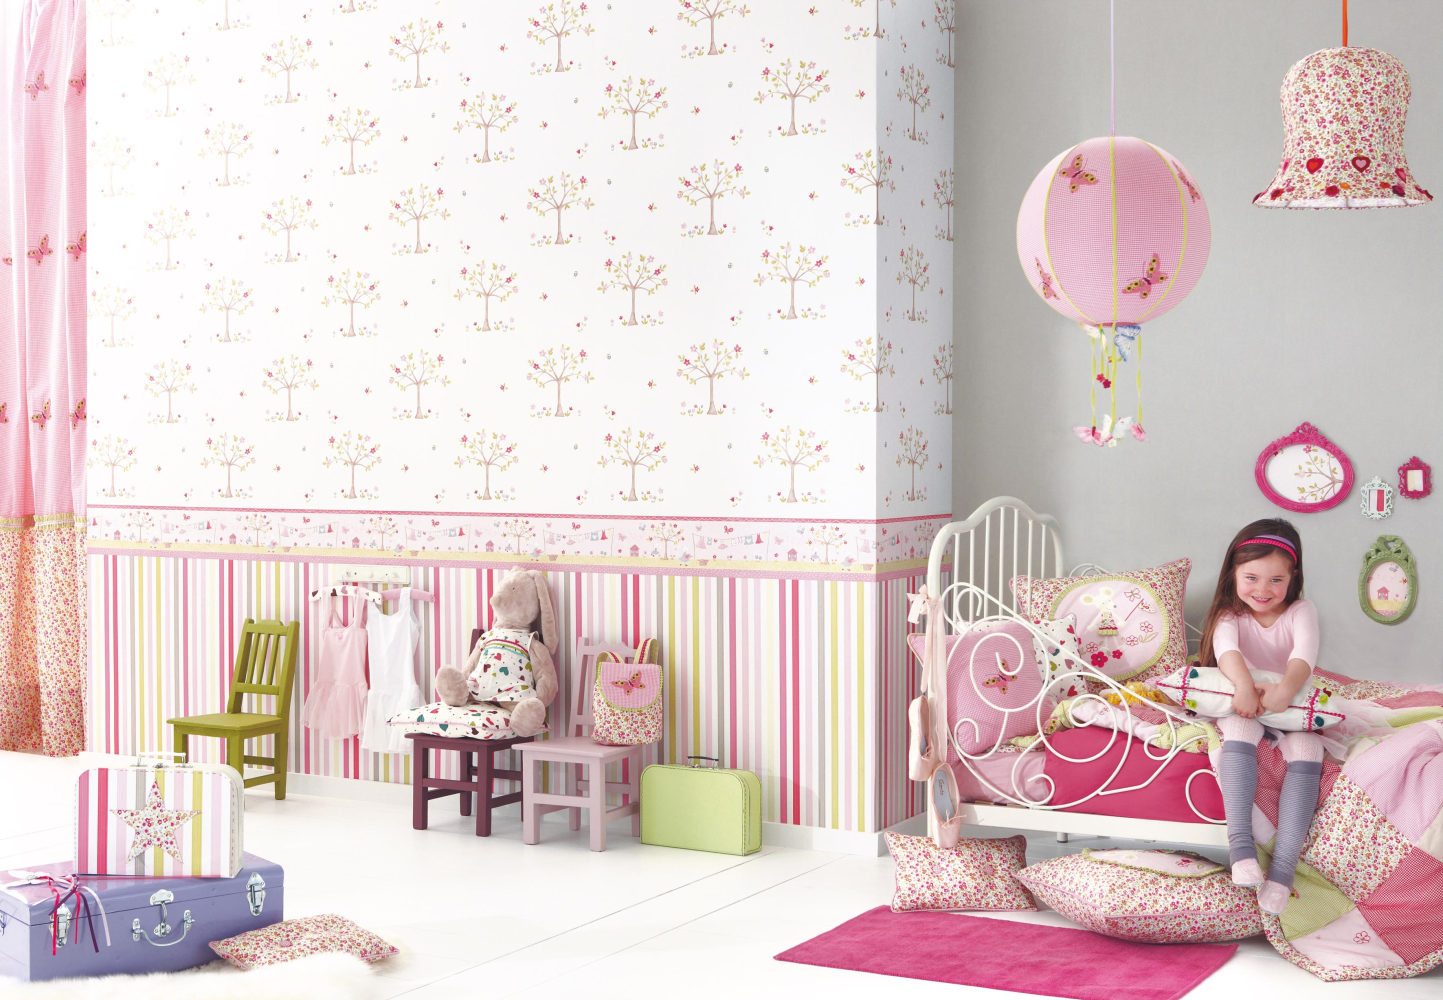 Kindertapeten und Kinderstoffe 'Lollipops' von Camengo #kinderbett #romantischeskinderbett #rosafarbeneskinderzimmer #rosafarbenesmädchenzimmer ©Camengo